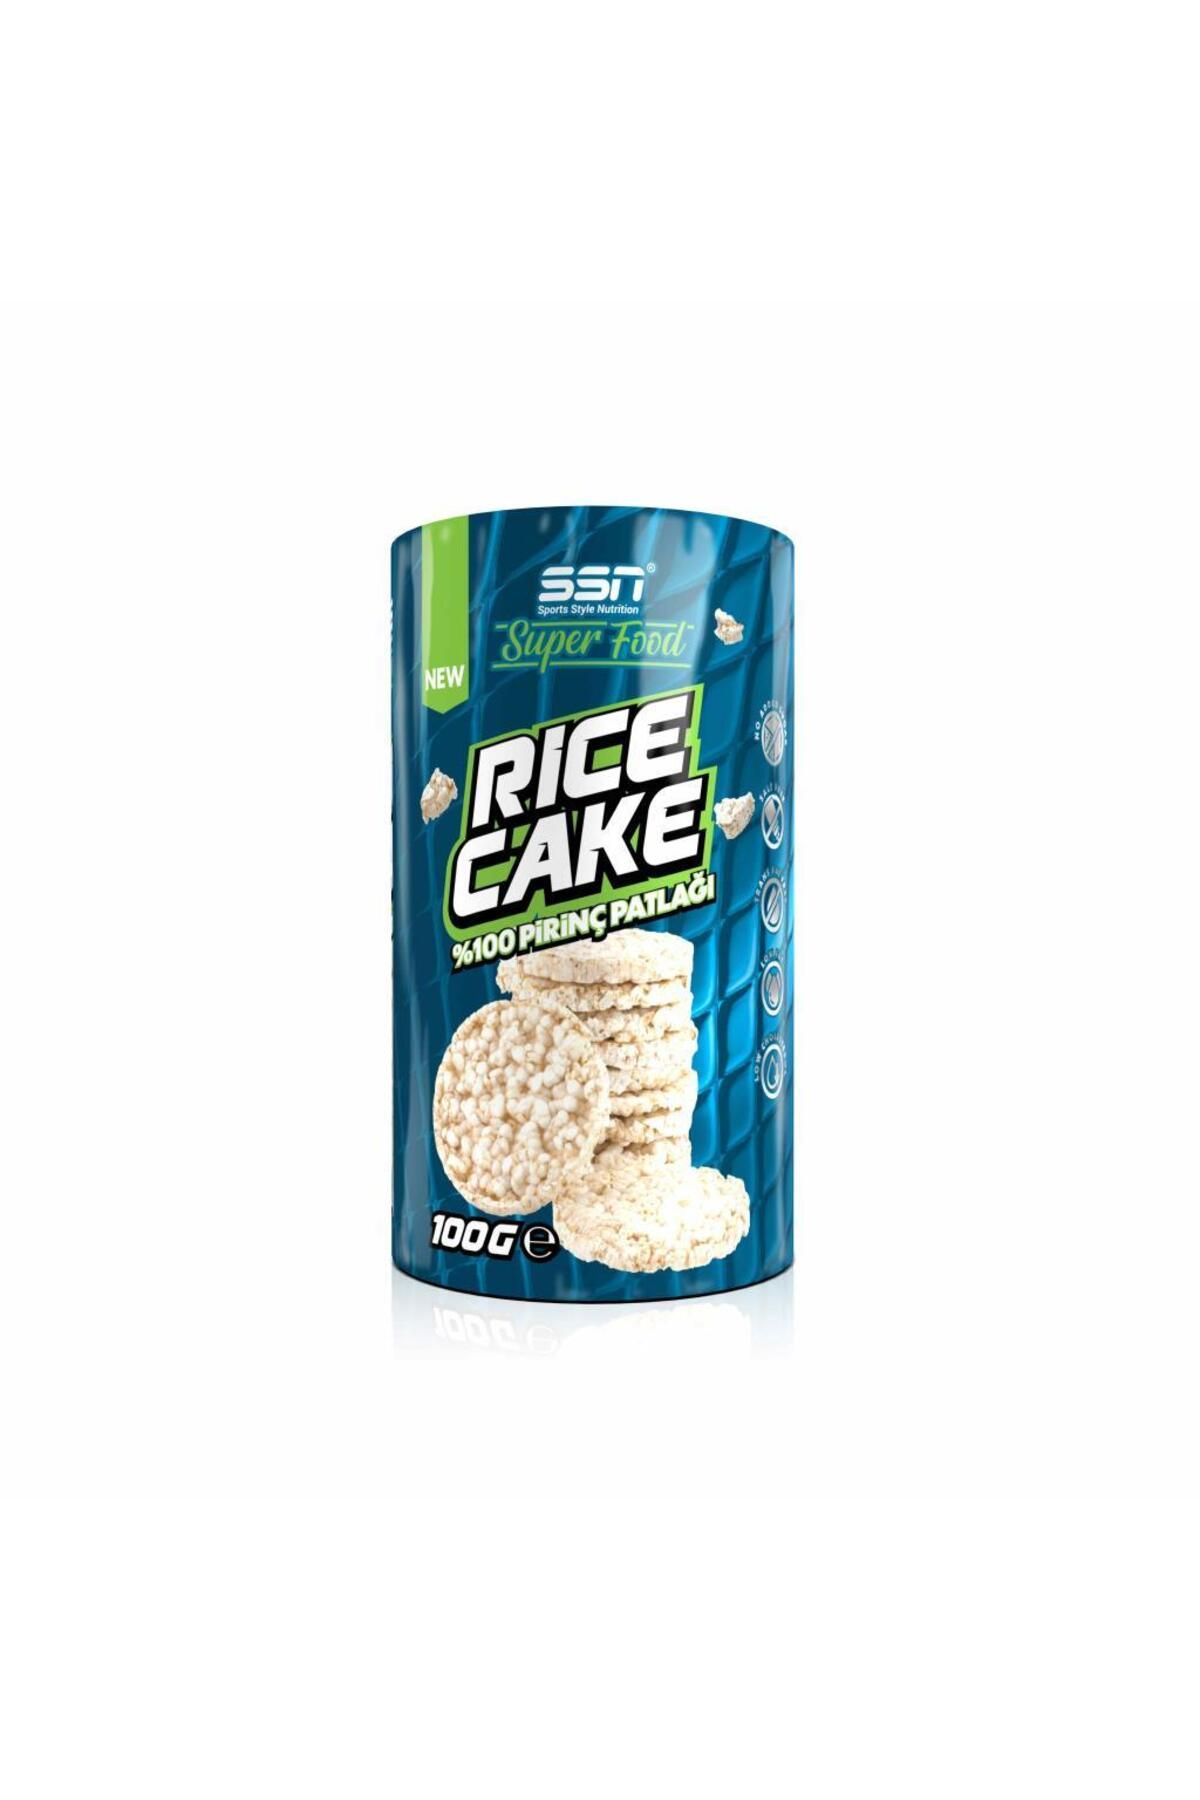 SSN Sports Style Nutrition Superfood Rice Cake Pirinç Patlağı 100 gr Sağlıklı Atıştırmalık